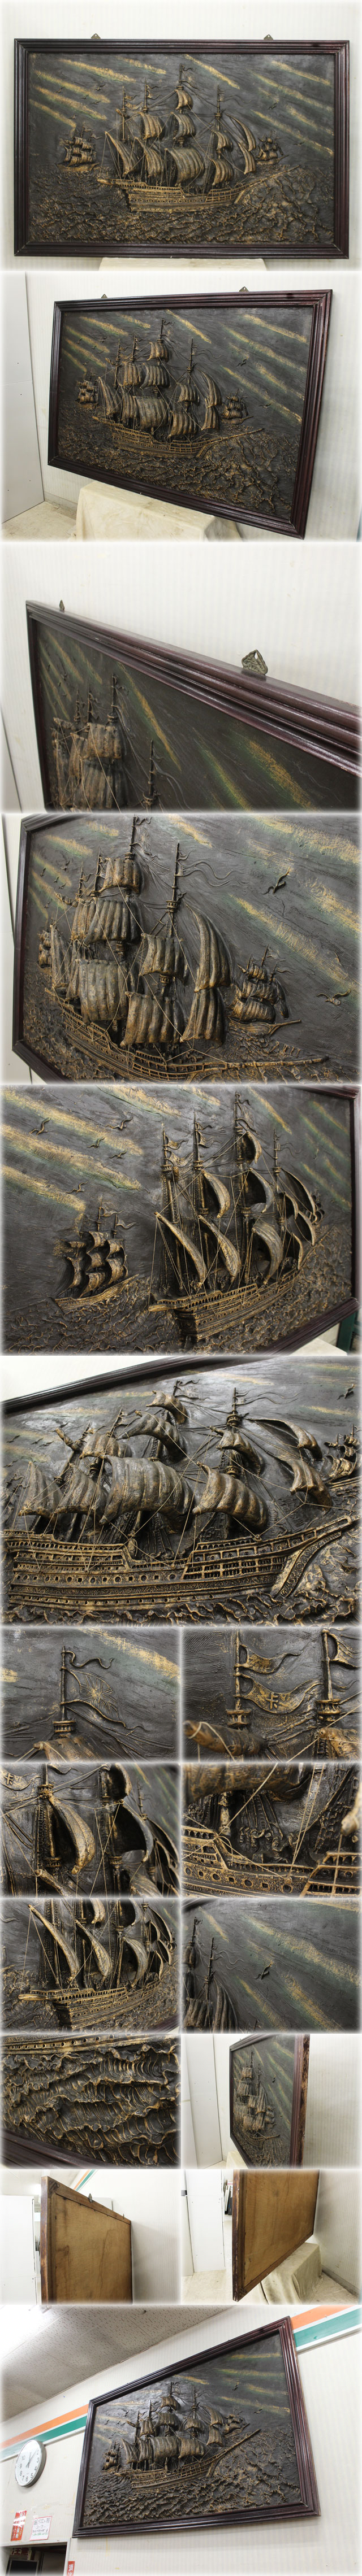 通販格安帆船額 W1890xH1230mm クラシック 大型アートフレーム 立体造形 アンティーク 美術品 インテリア雑貨 西洋彫刻